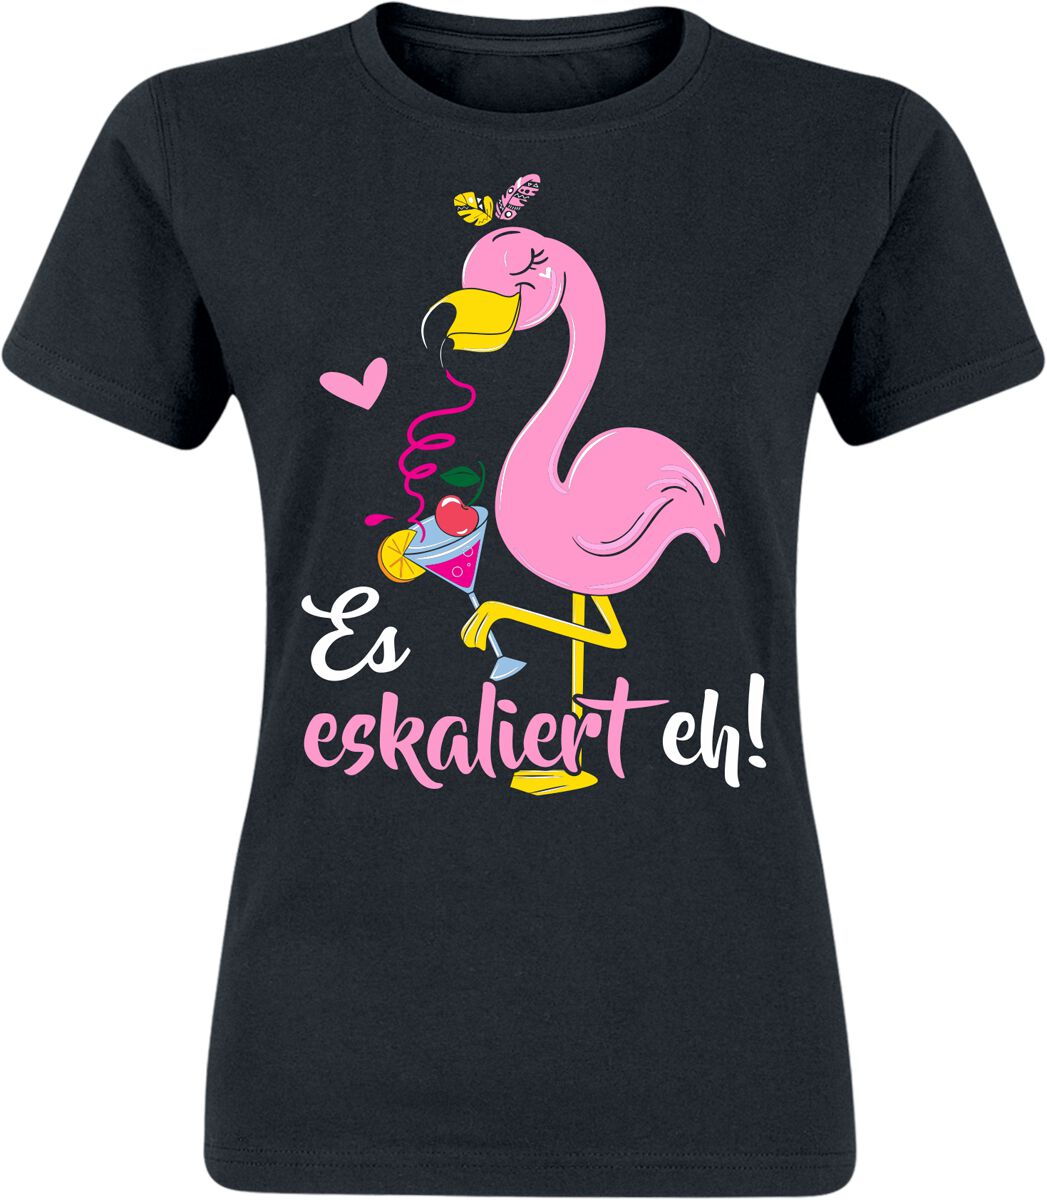 Alkohol & Party Flamingo - Es eskaliert eh! T-Shirt schwarz in M